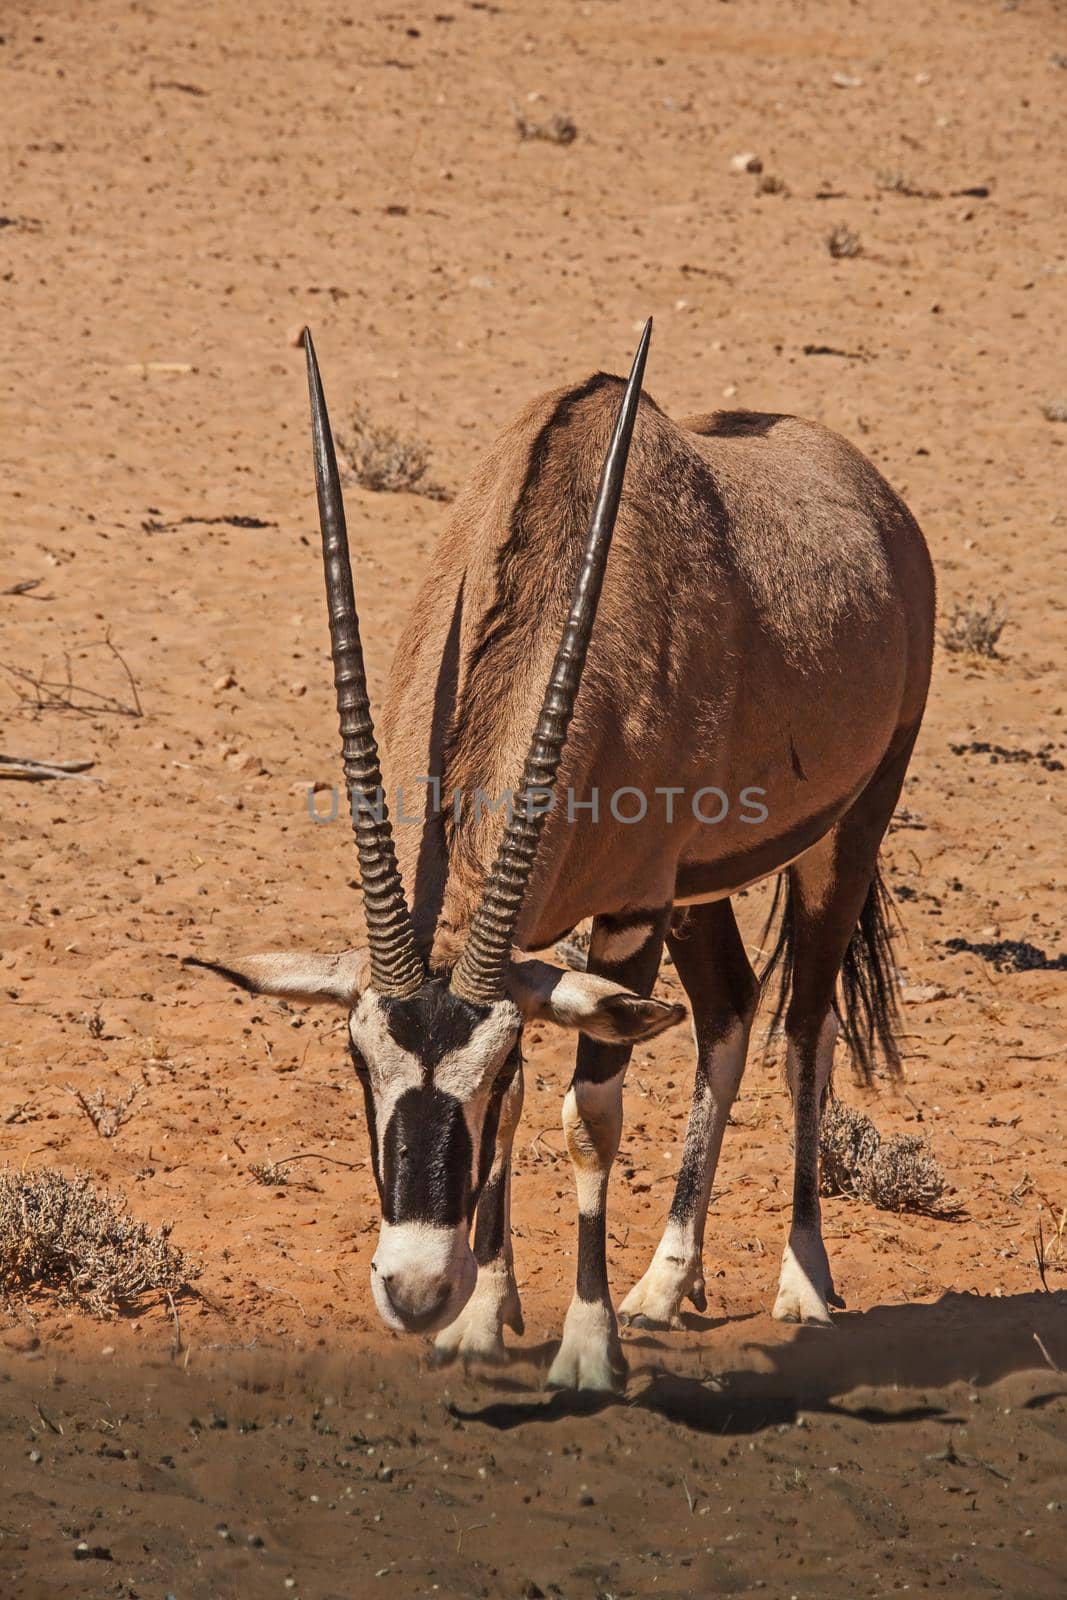 A single Oryx Oryx gazella on a desert 4797 by kobus_peche